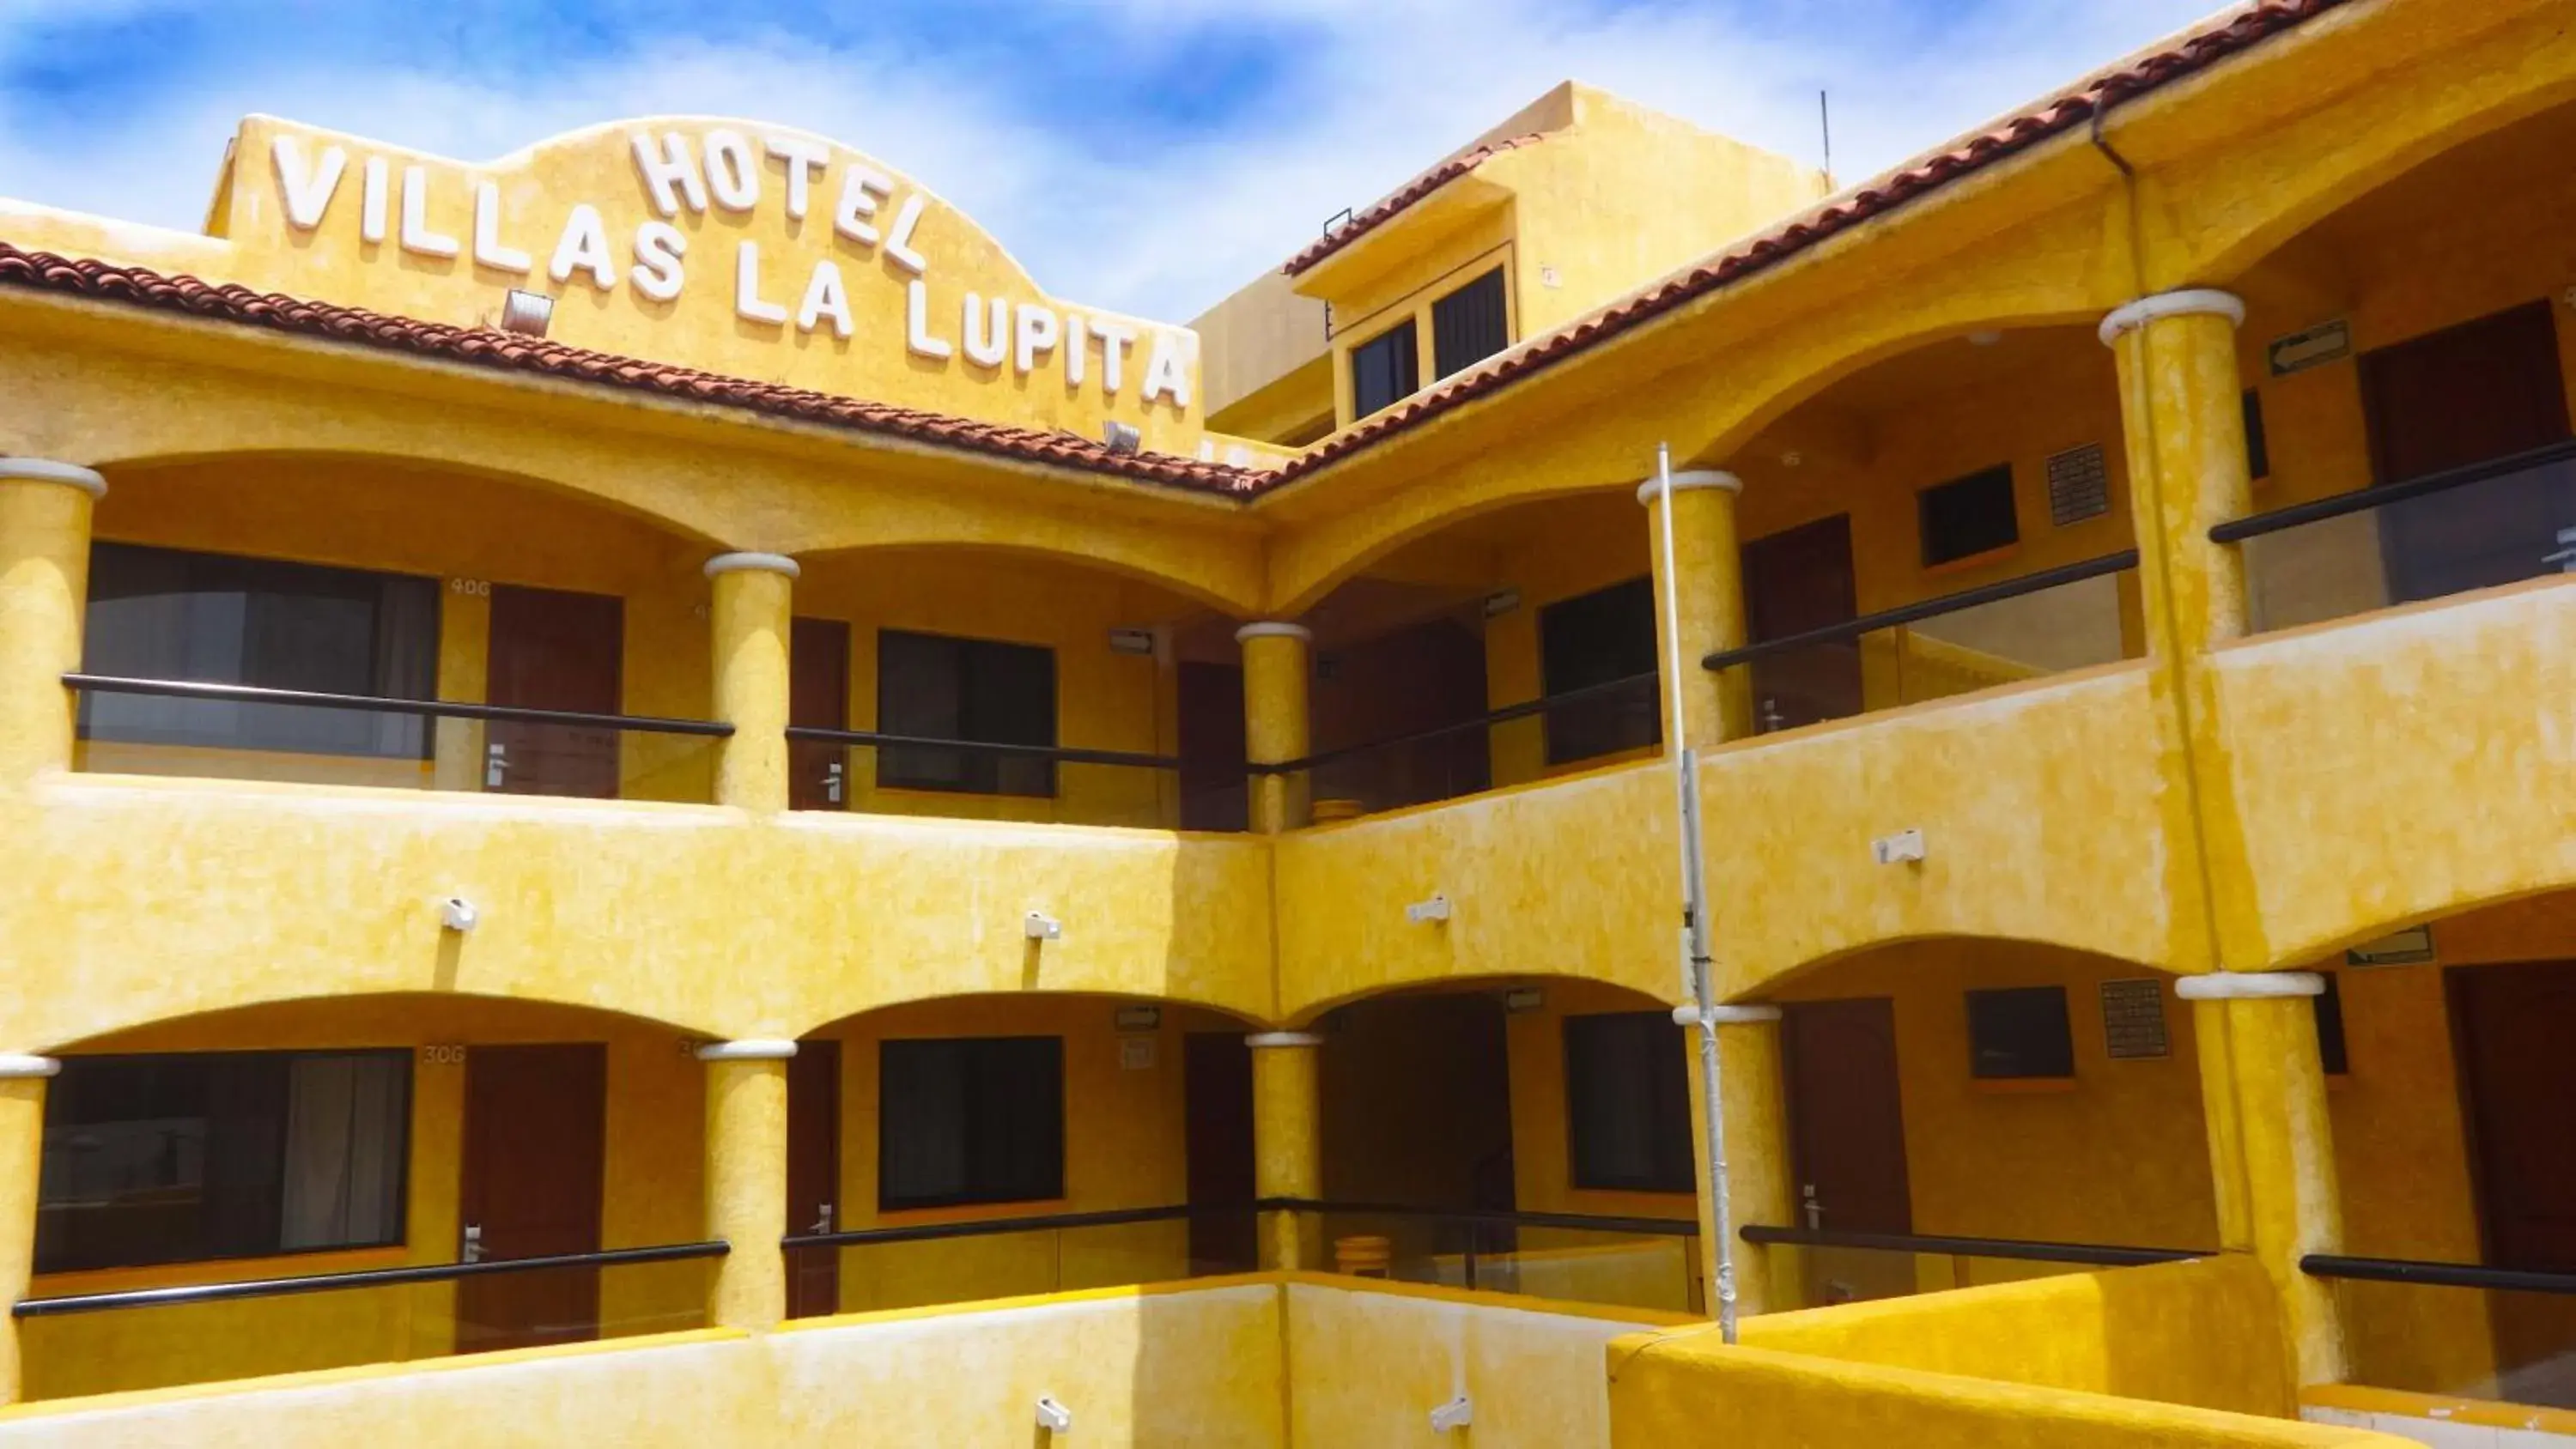 Property Building in Villas La Lupita